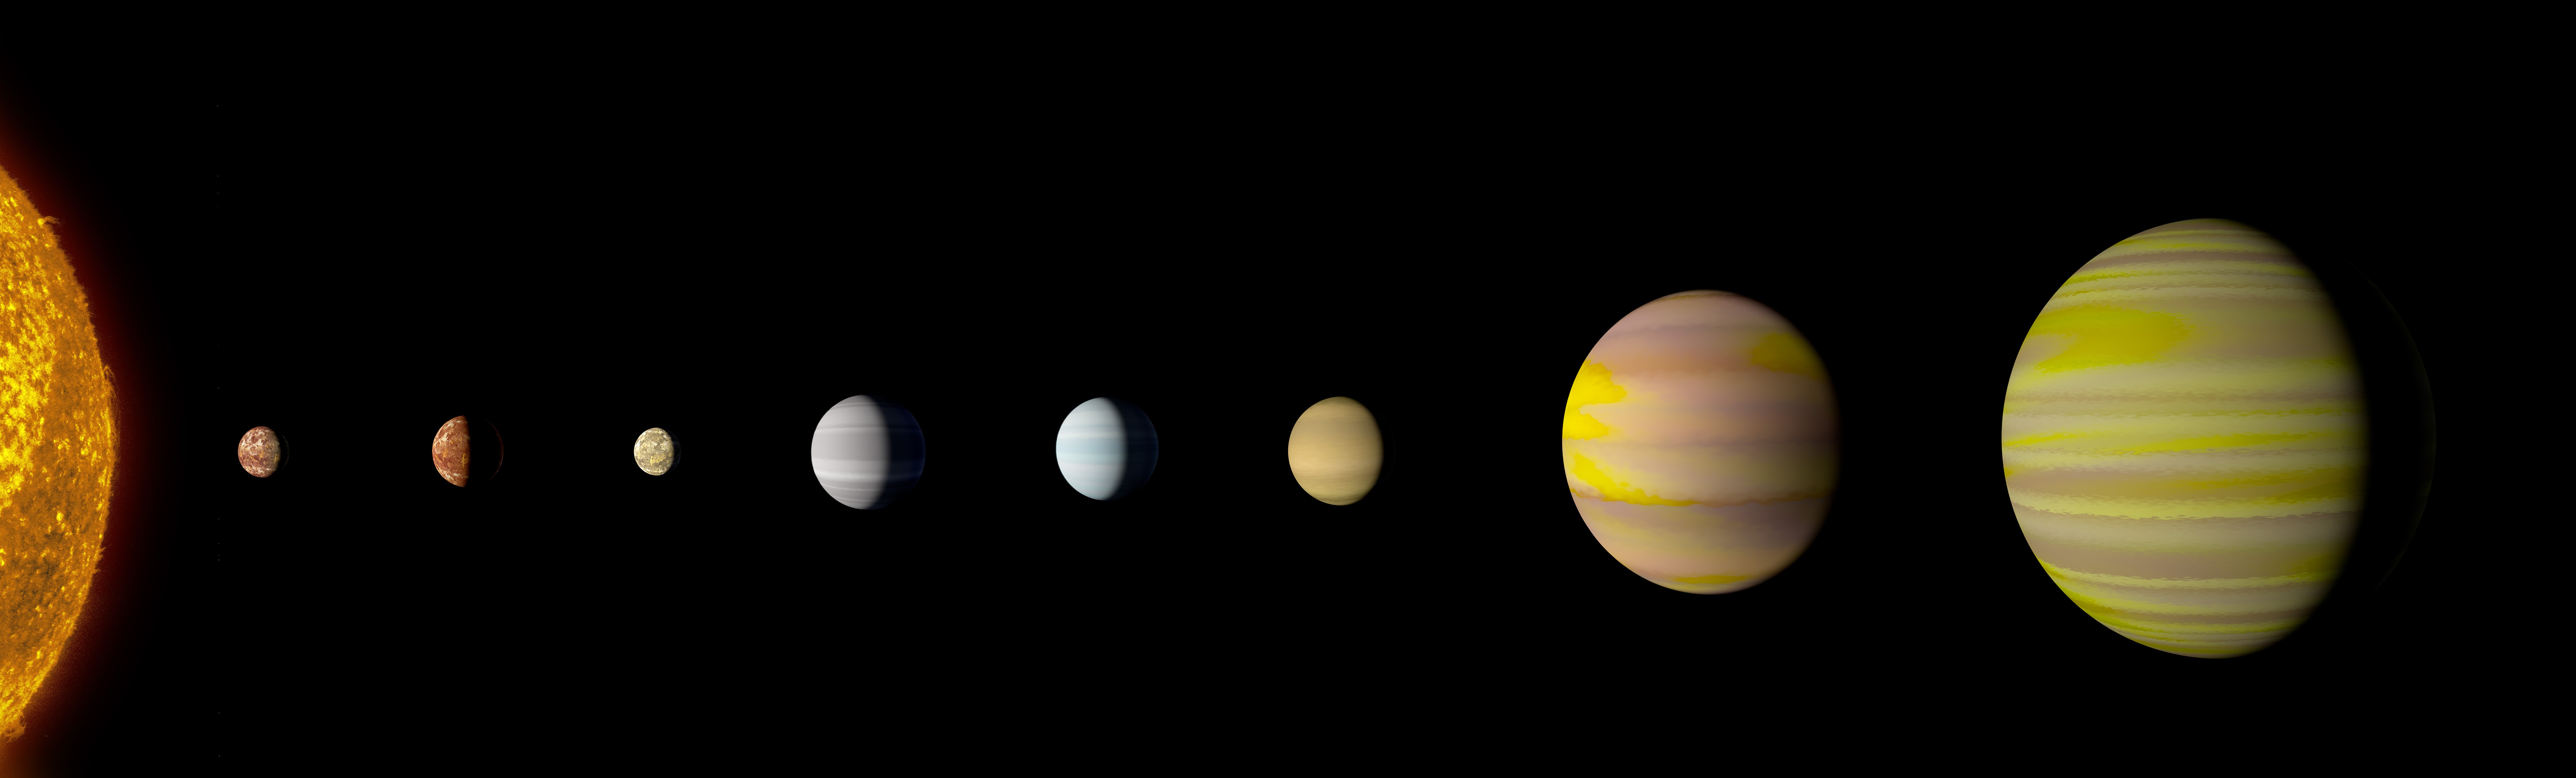 Conjunto de descoberta de exoplanetas (Foto: Nasa)